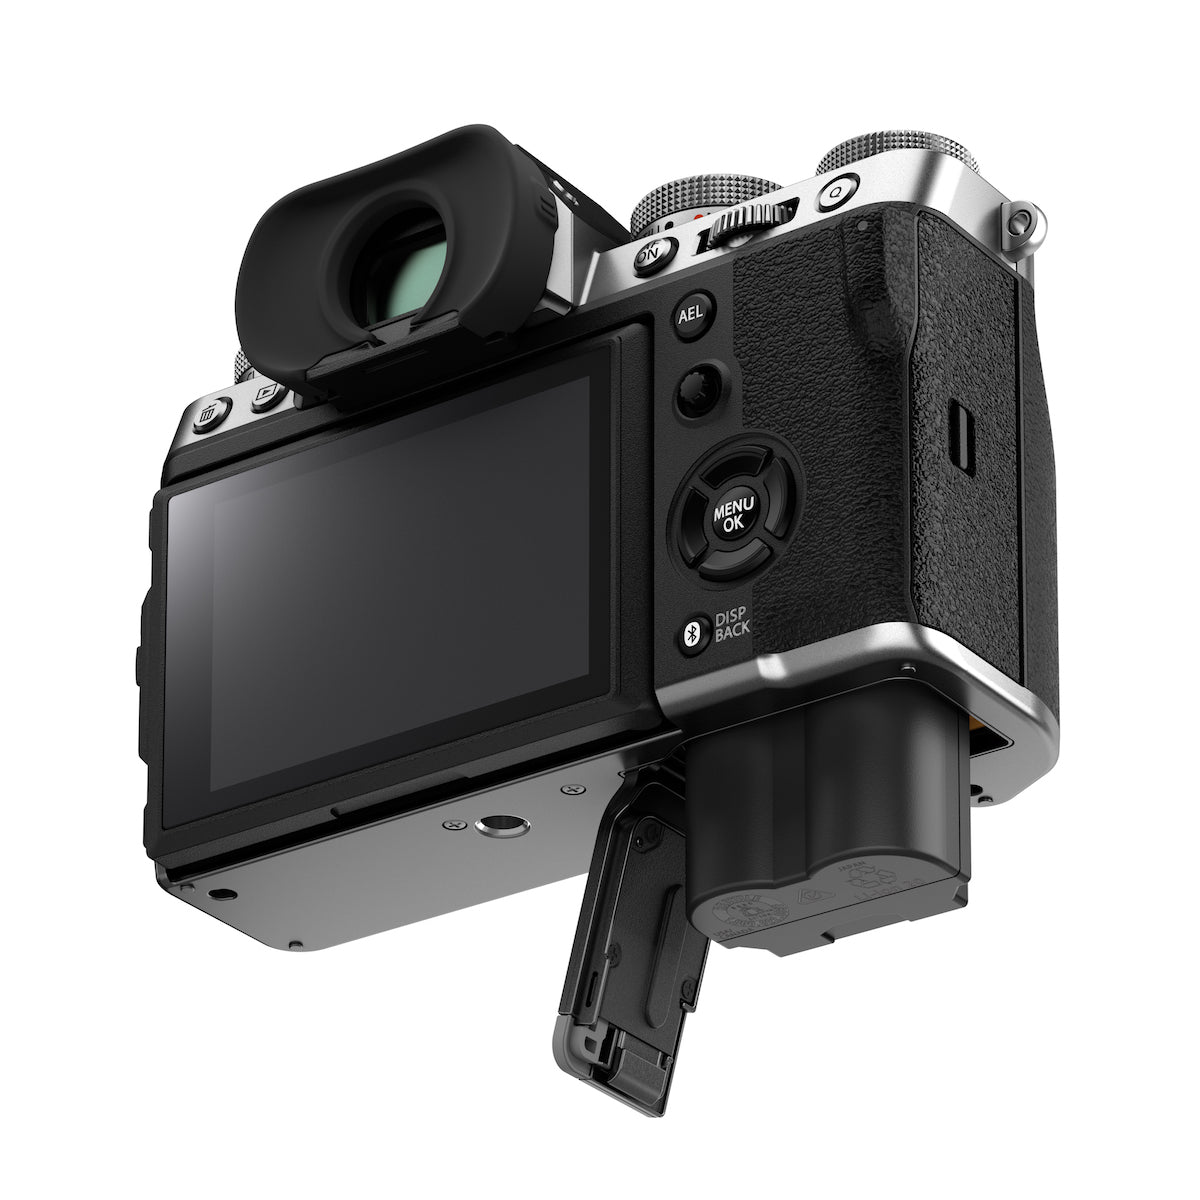 Fujifilm X-T5 Digital Camera Body (Silver)